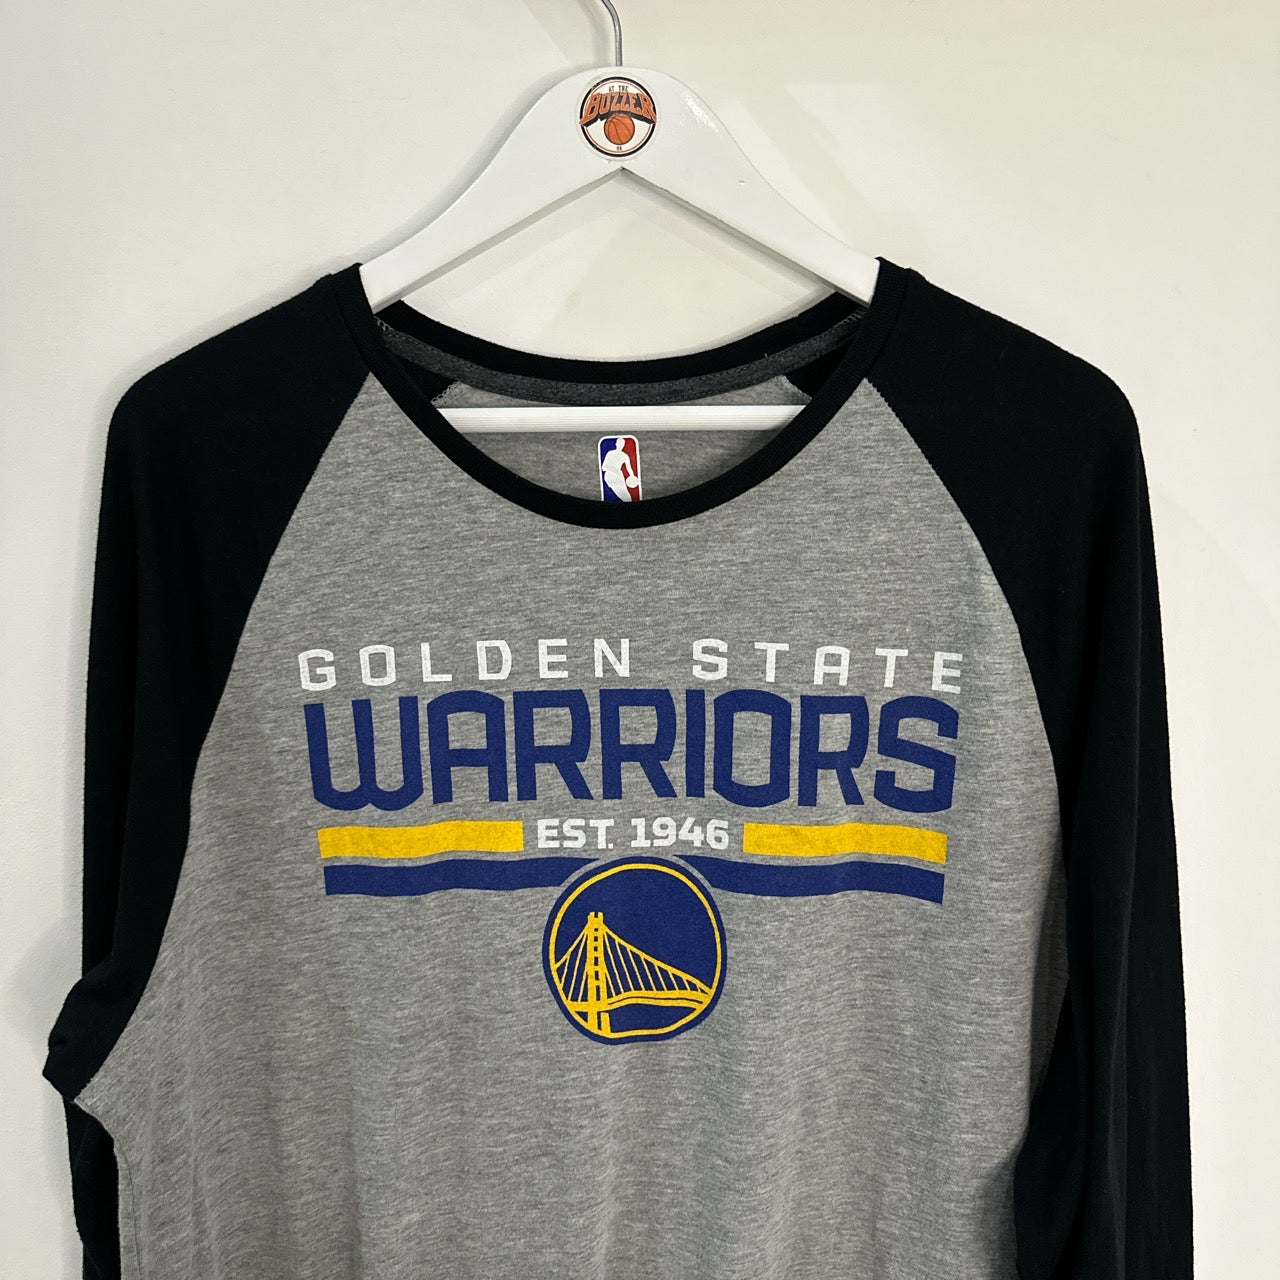 Golden State Warriors long sleeve T shirt - XL